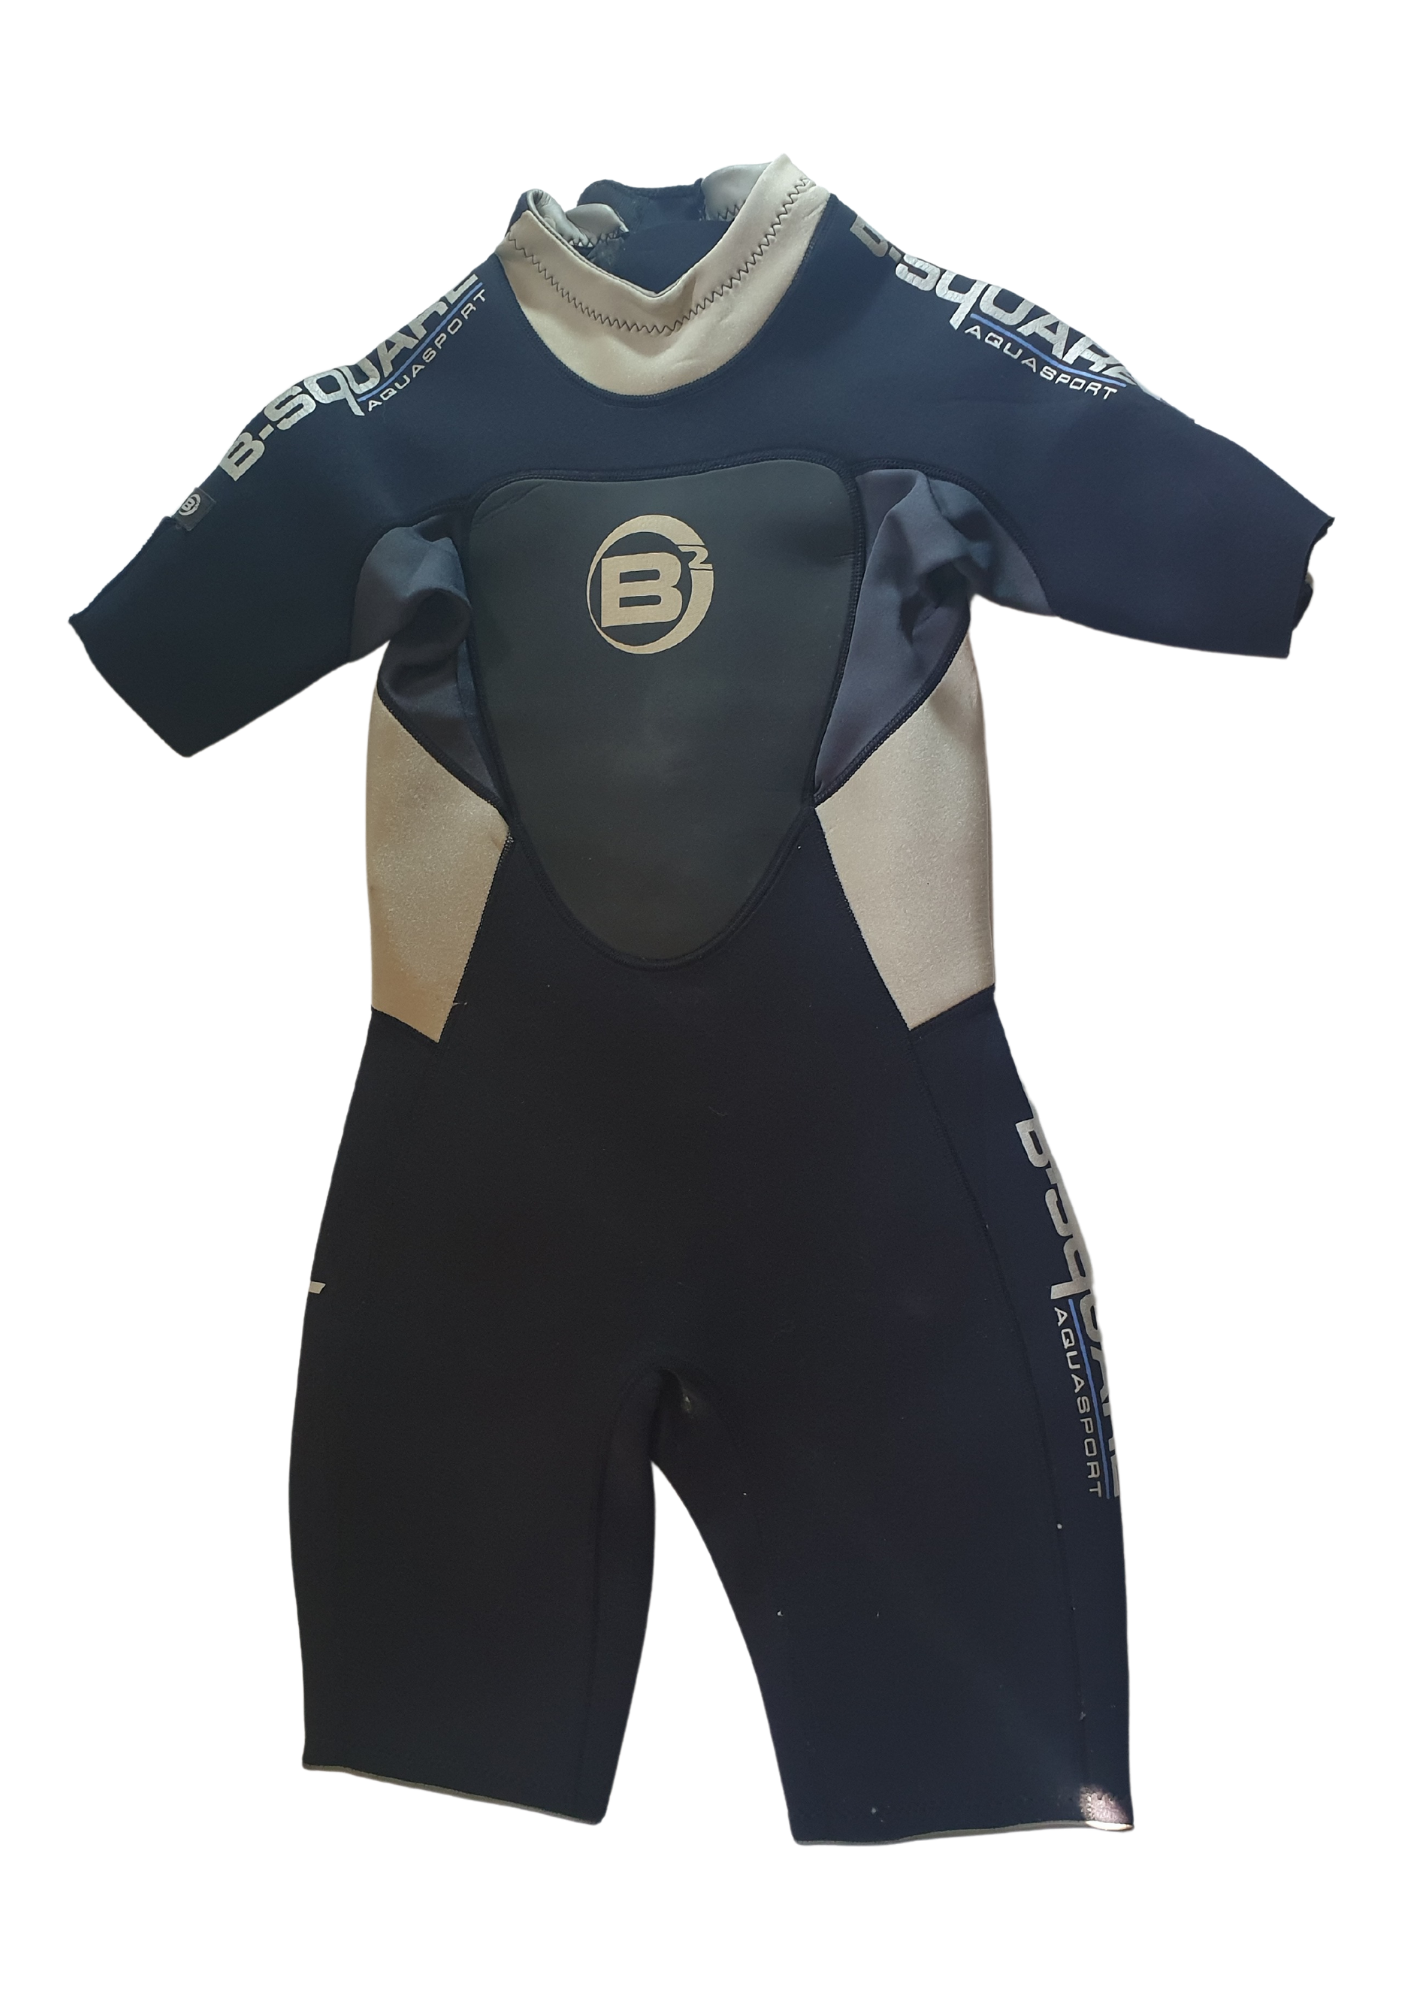 B - Square Aquasport Shorty Wetsuit Size - Medium